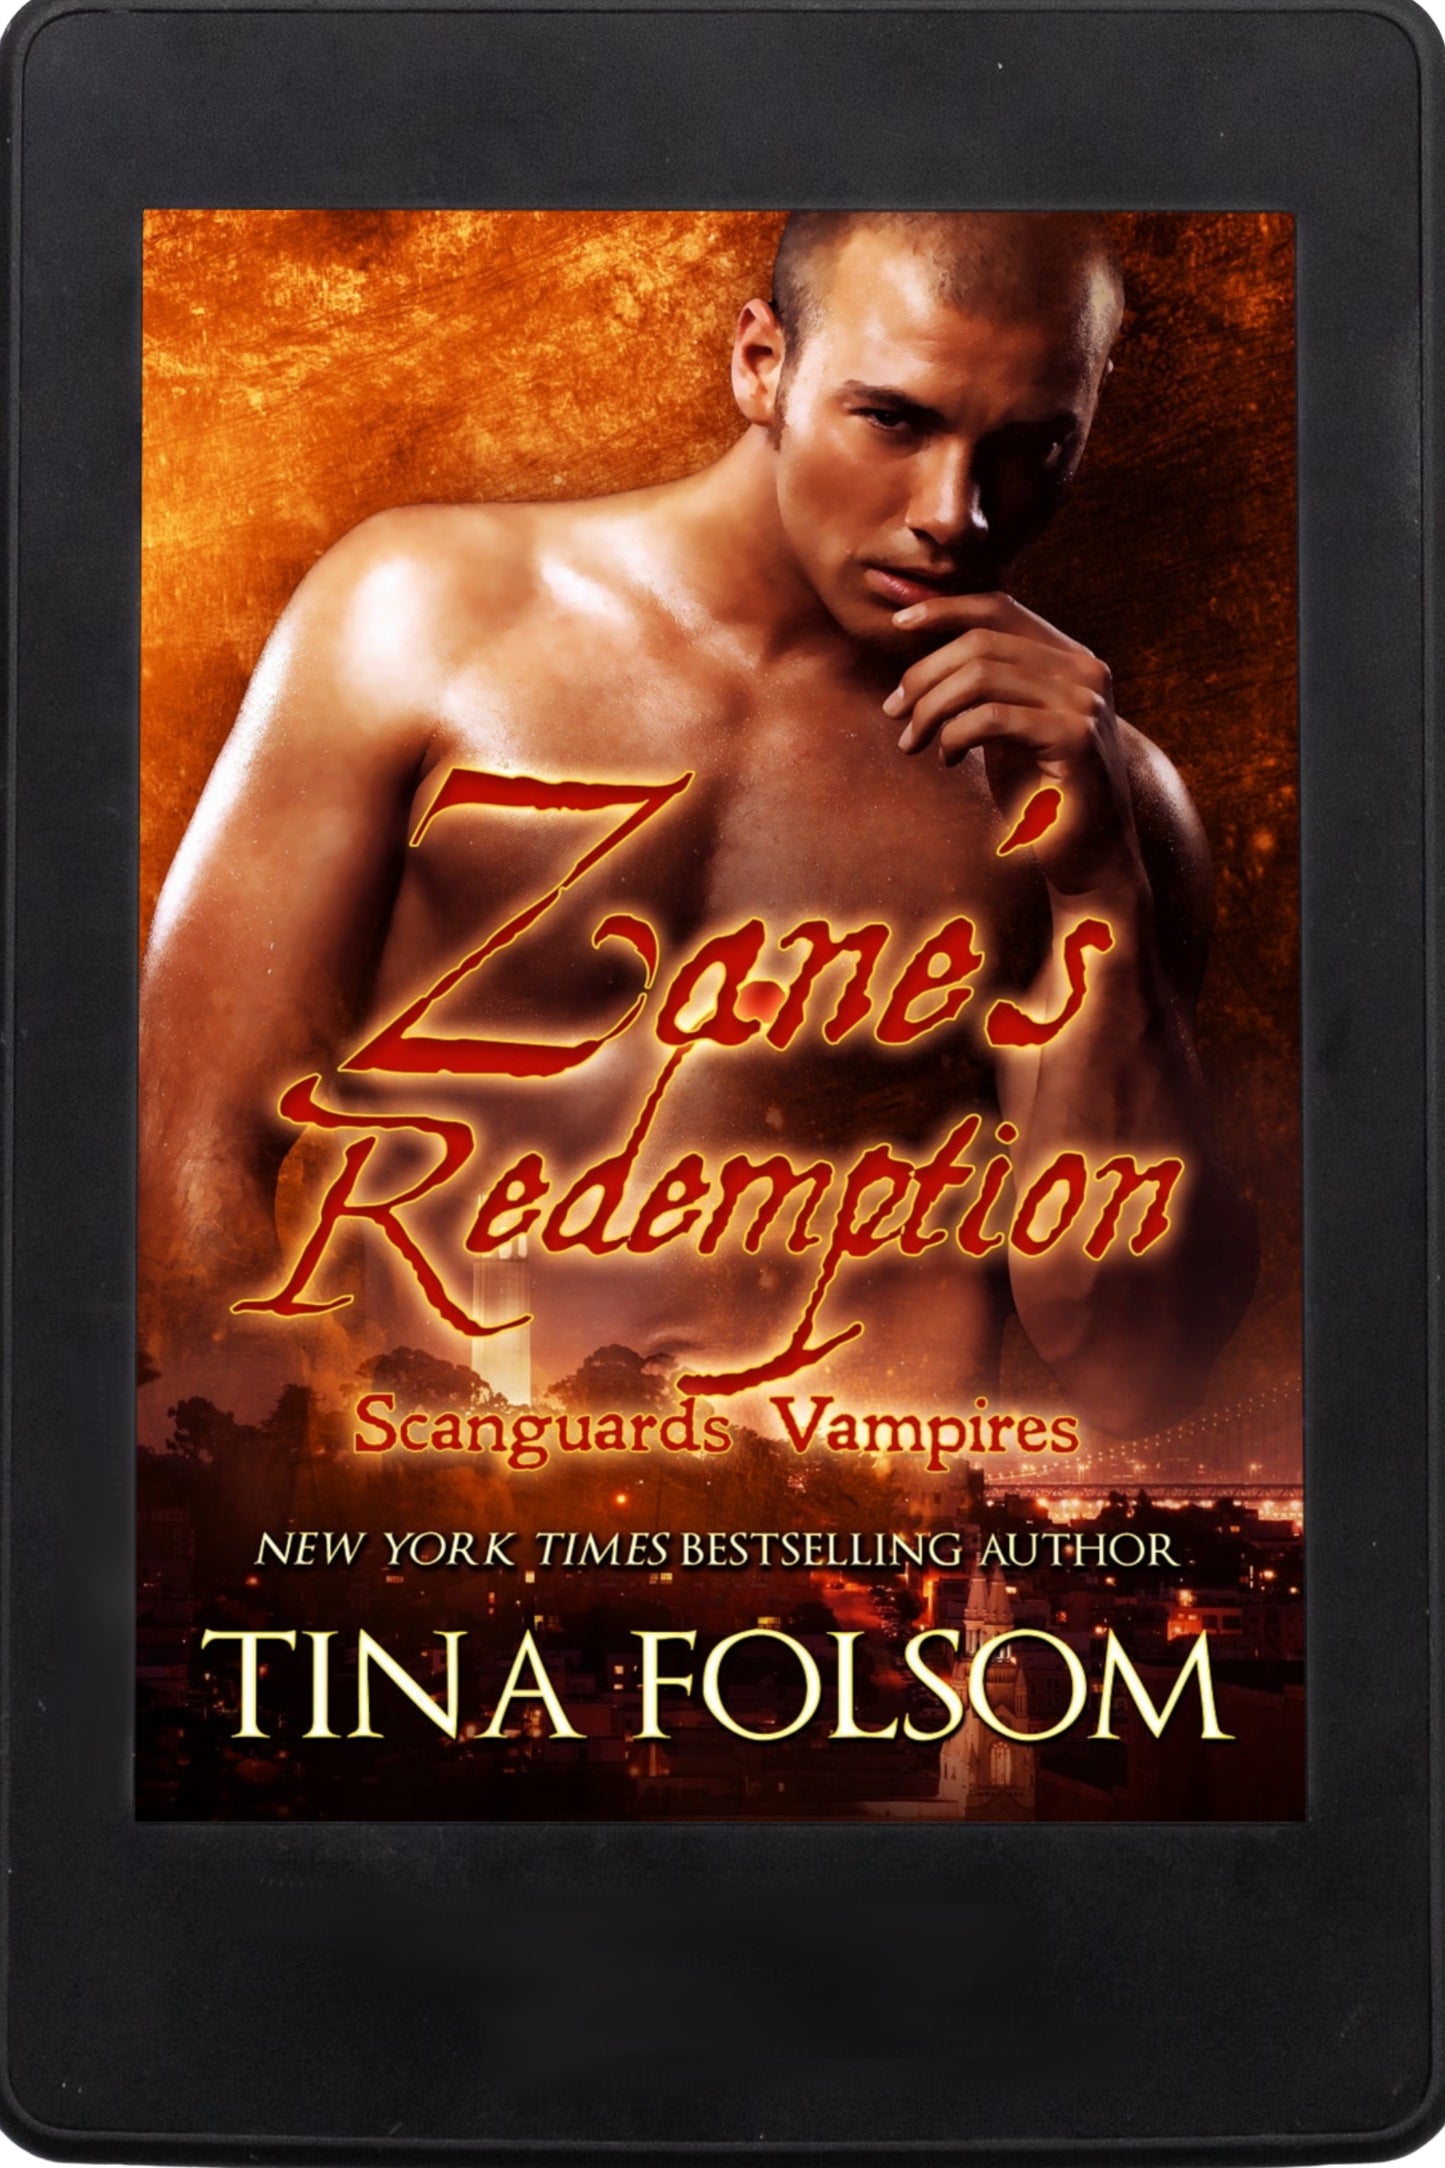 zane's redemption scanguards vampires ebook